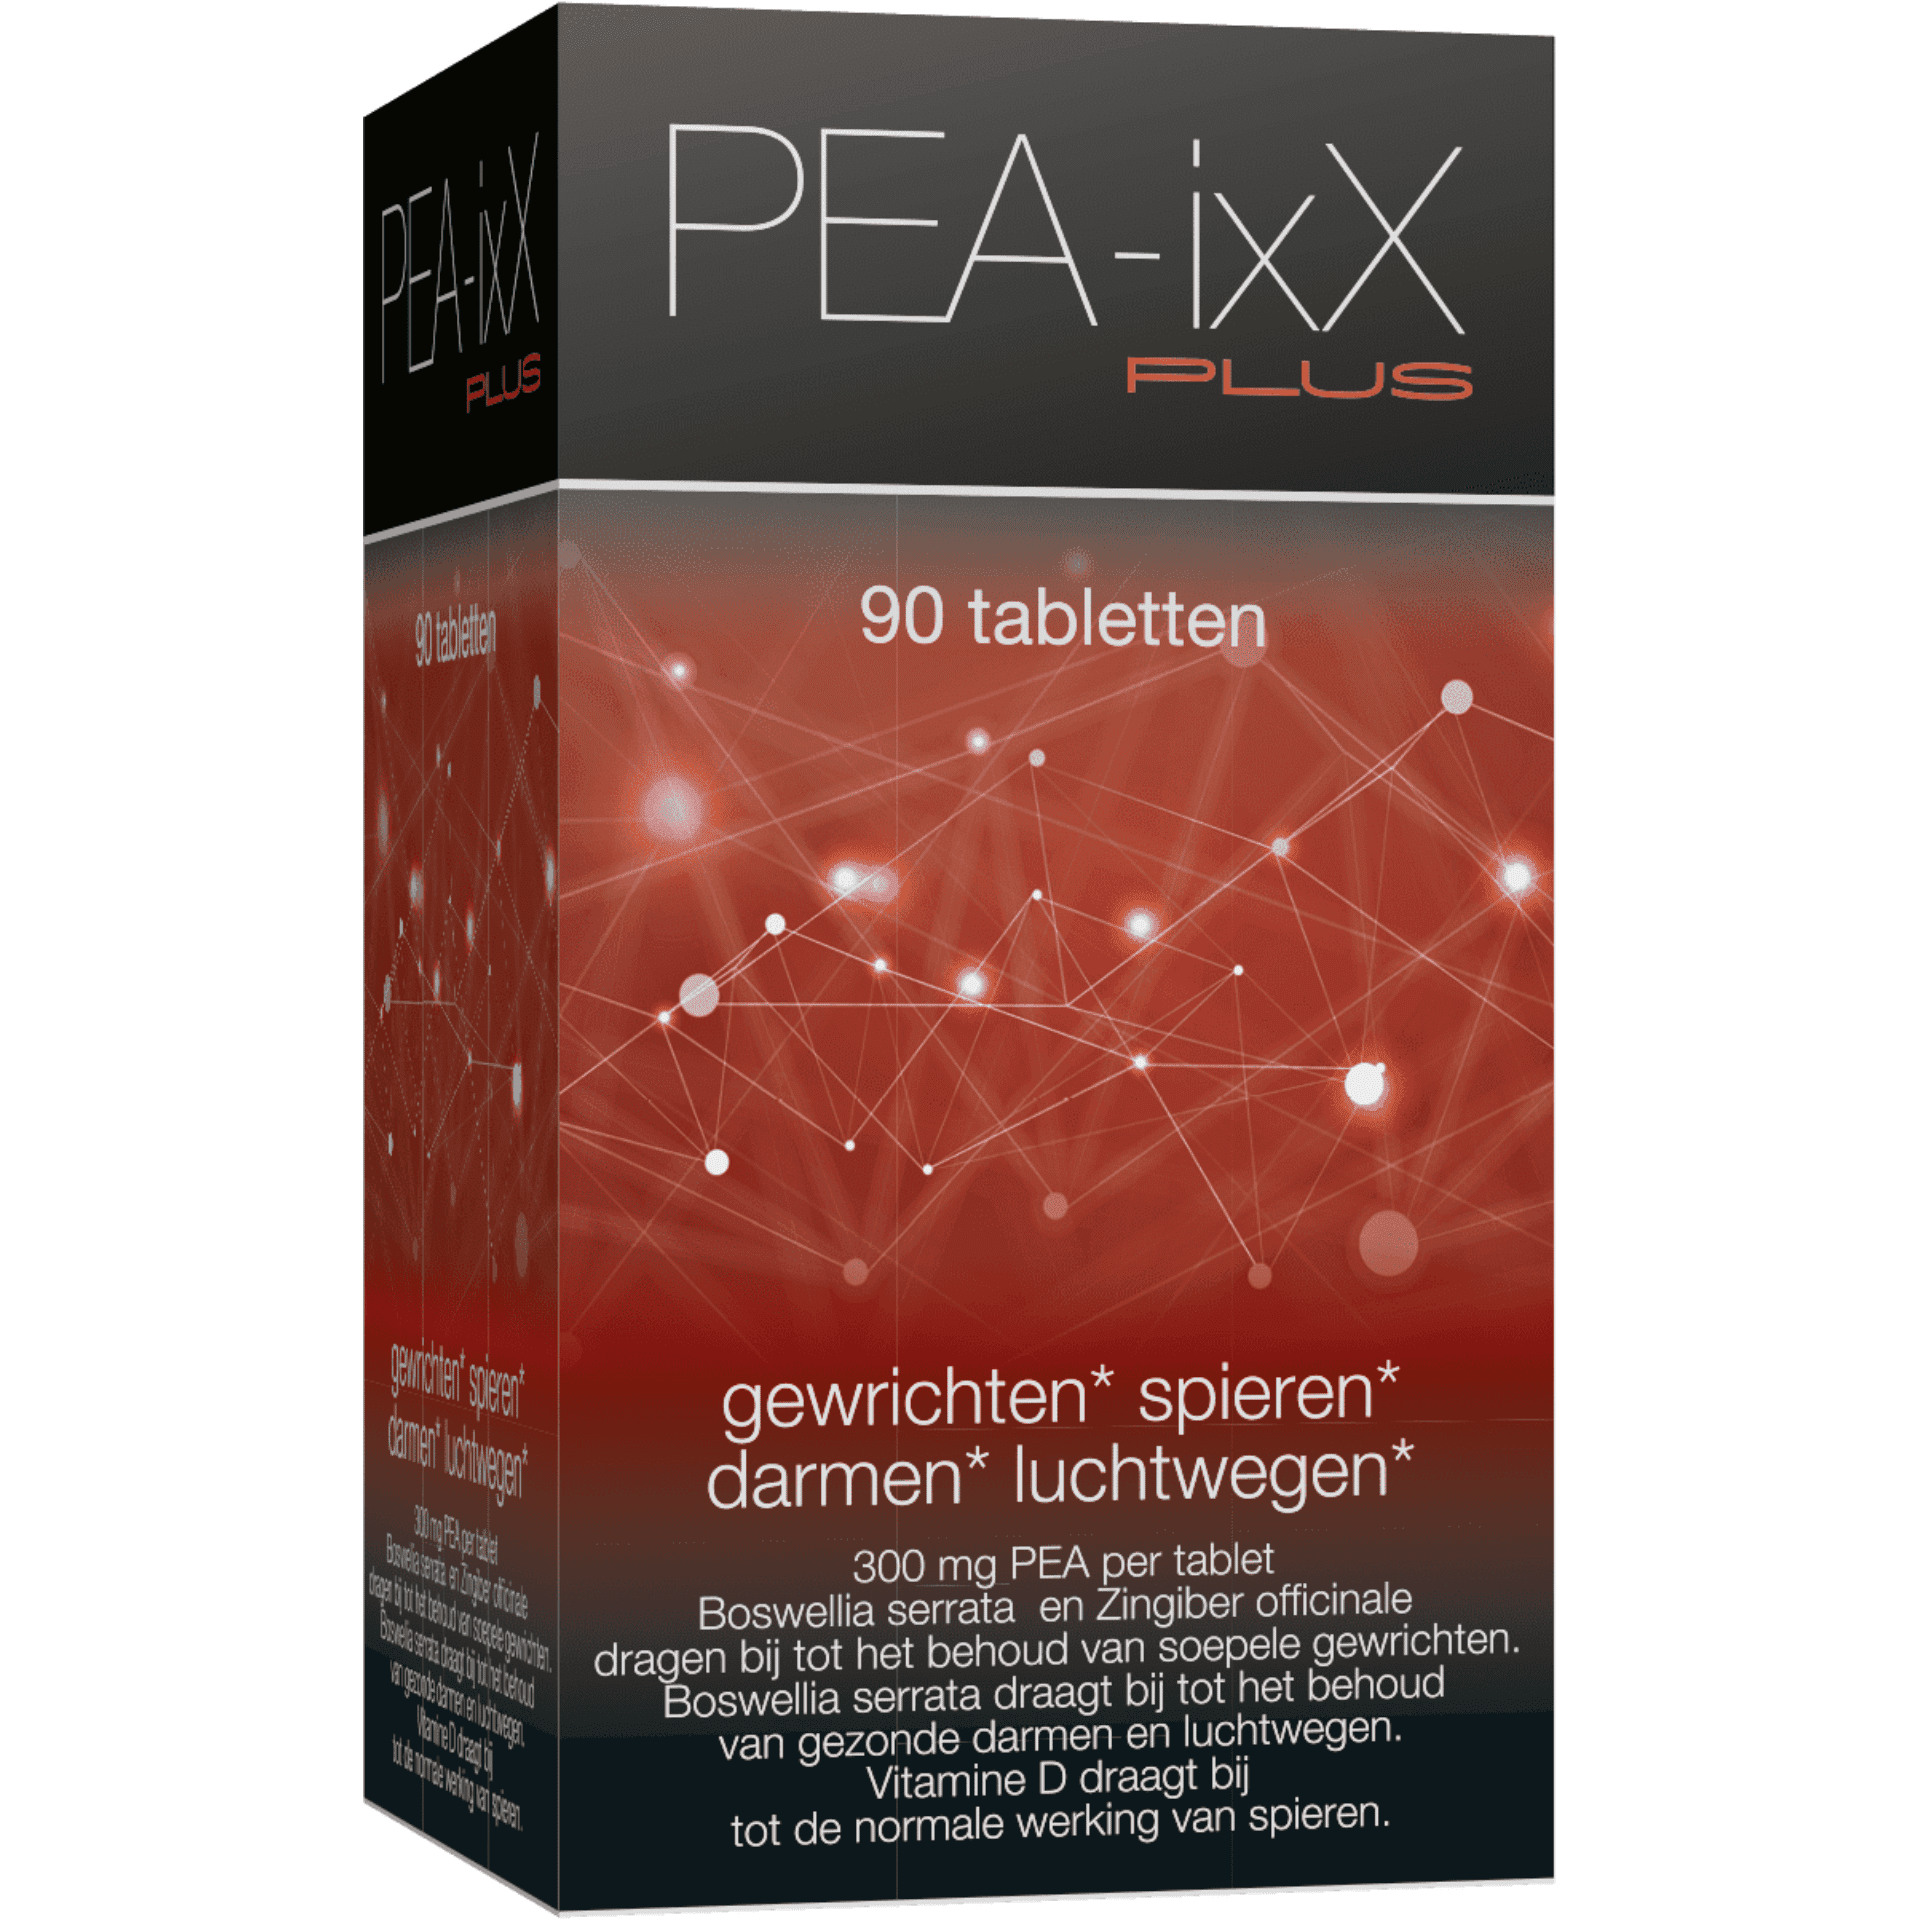 PEA-ixX Plus 90 comprimés